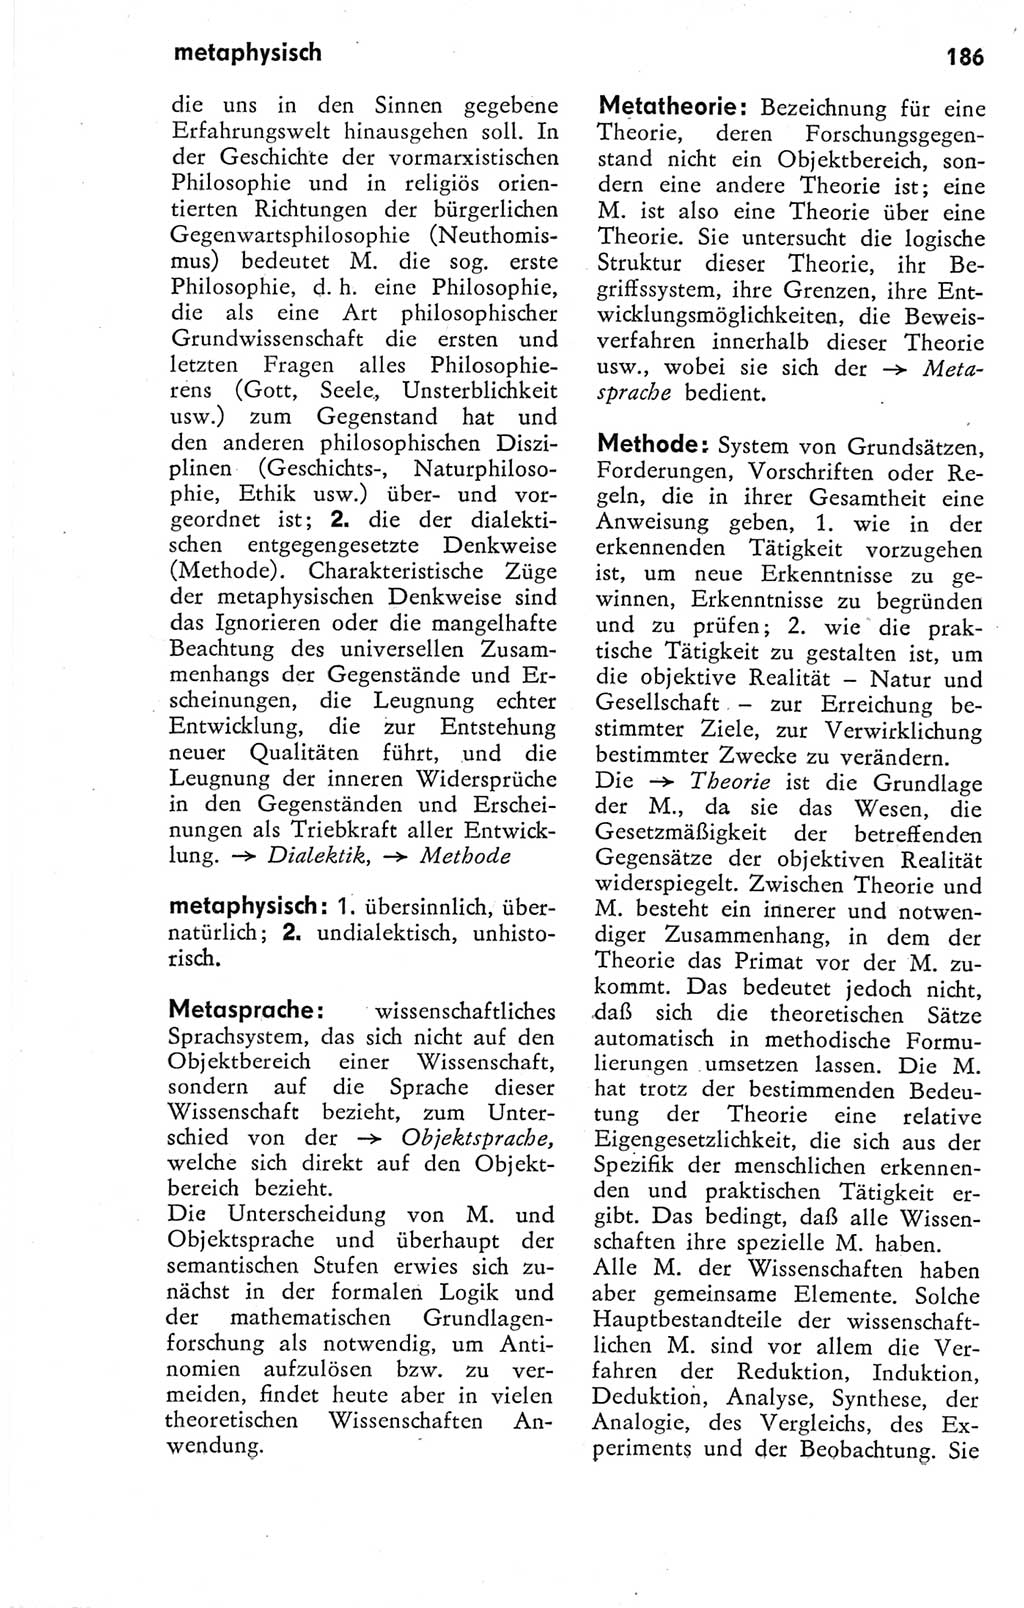 Kleines Wörterbuch der marxistisch-leninistischen Philosophie [Deutsche Demokratische Republik (DDR)] 1974, Seite 177 (Kl. Wb. ML Phil. DDR 1974, S. 177)